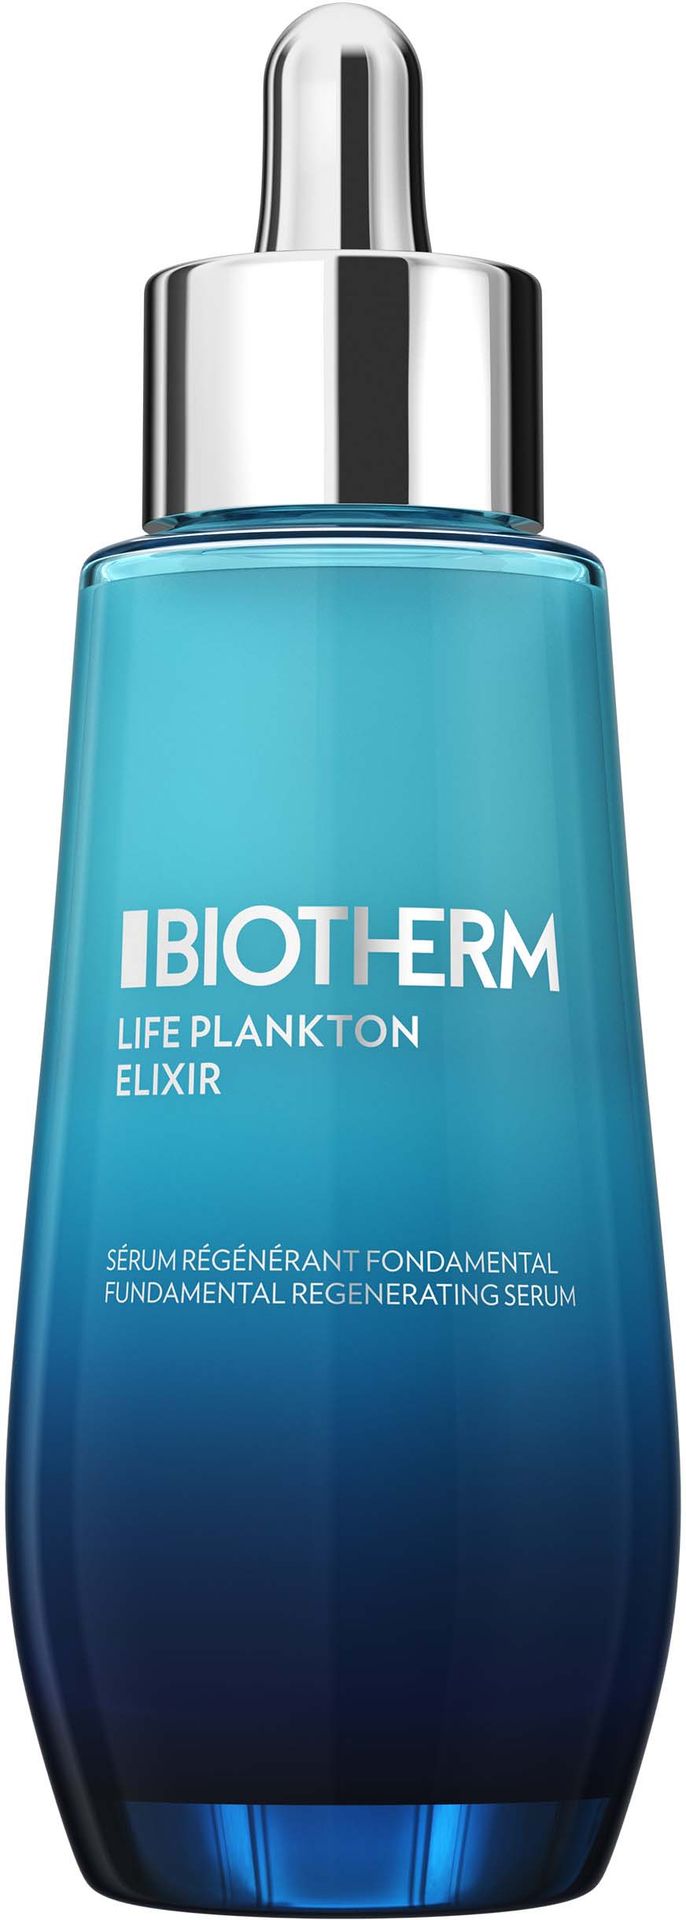 Biotherm Biotherm Life Plankton Elixir kuracja regeneracyjna do codziennego użytku